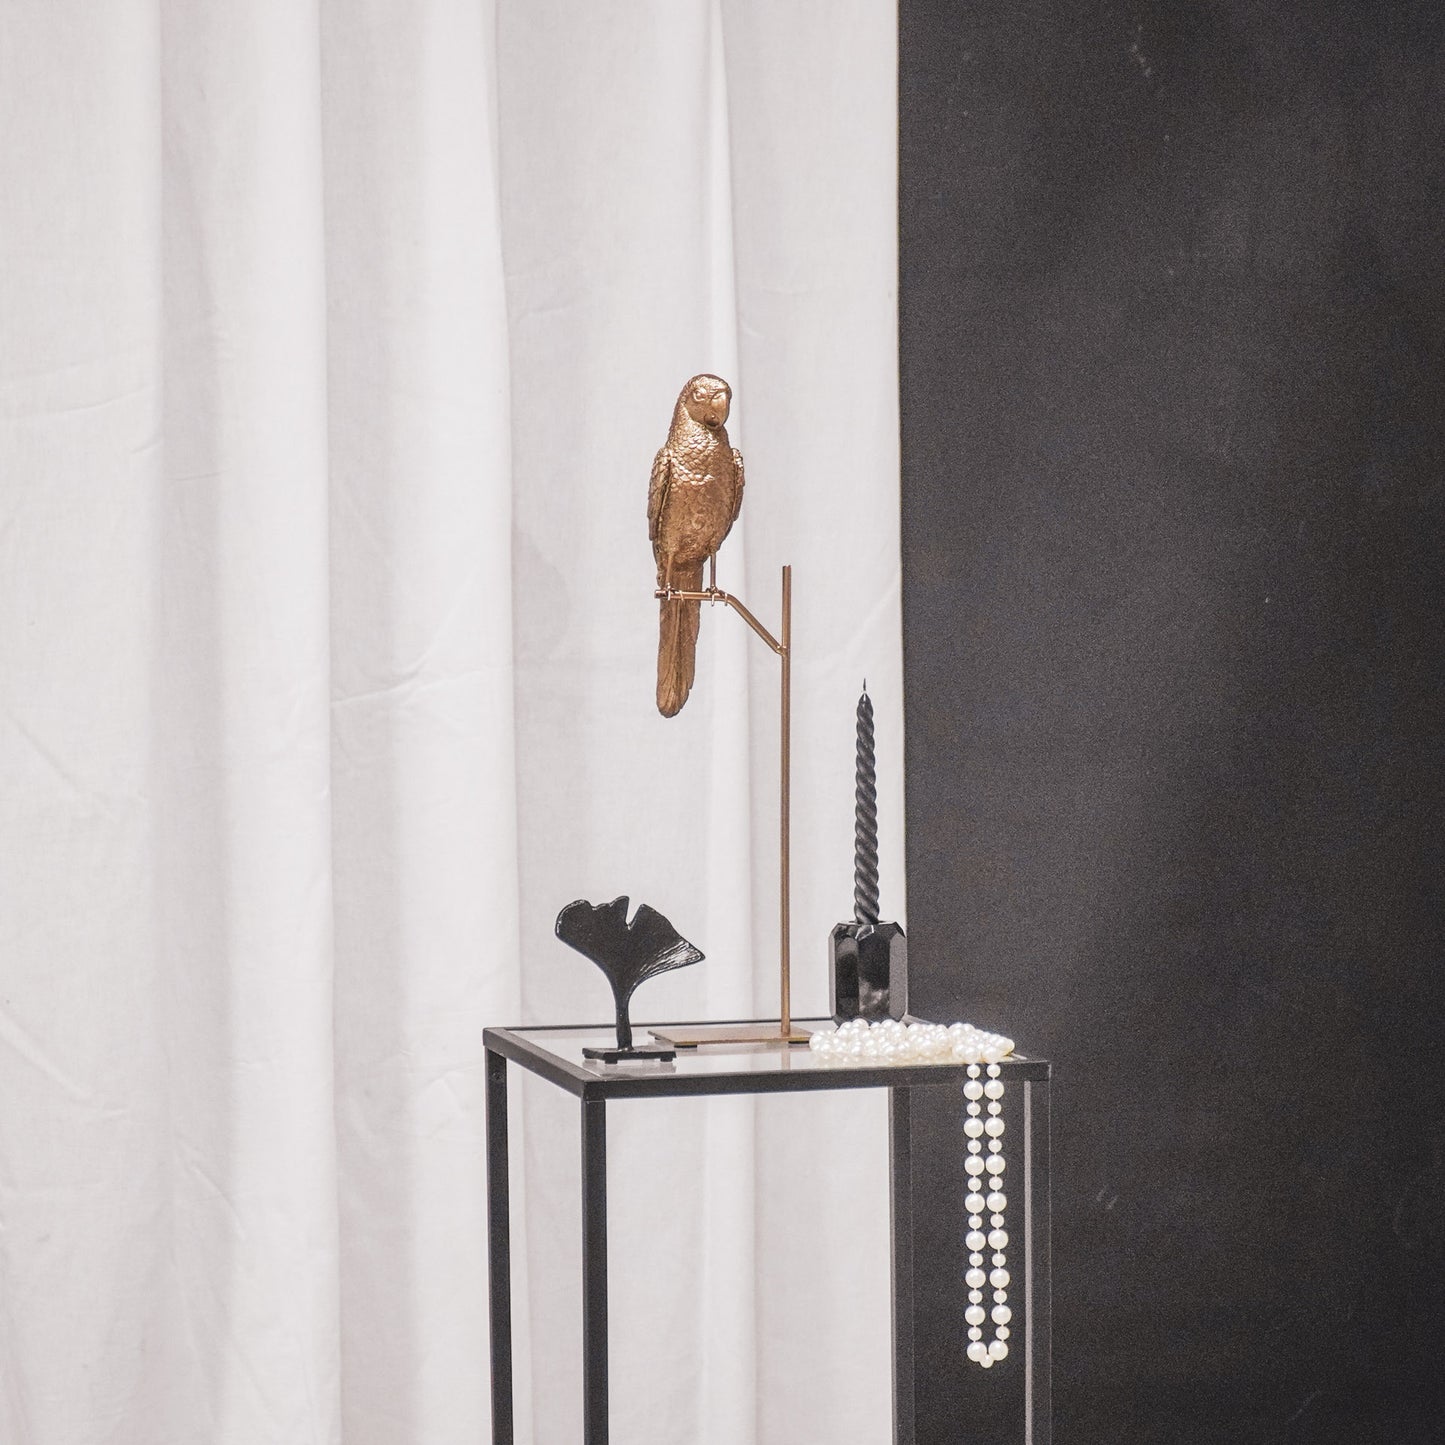 HV Parrot on a Stick- Gold 8.5x11x44 cm